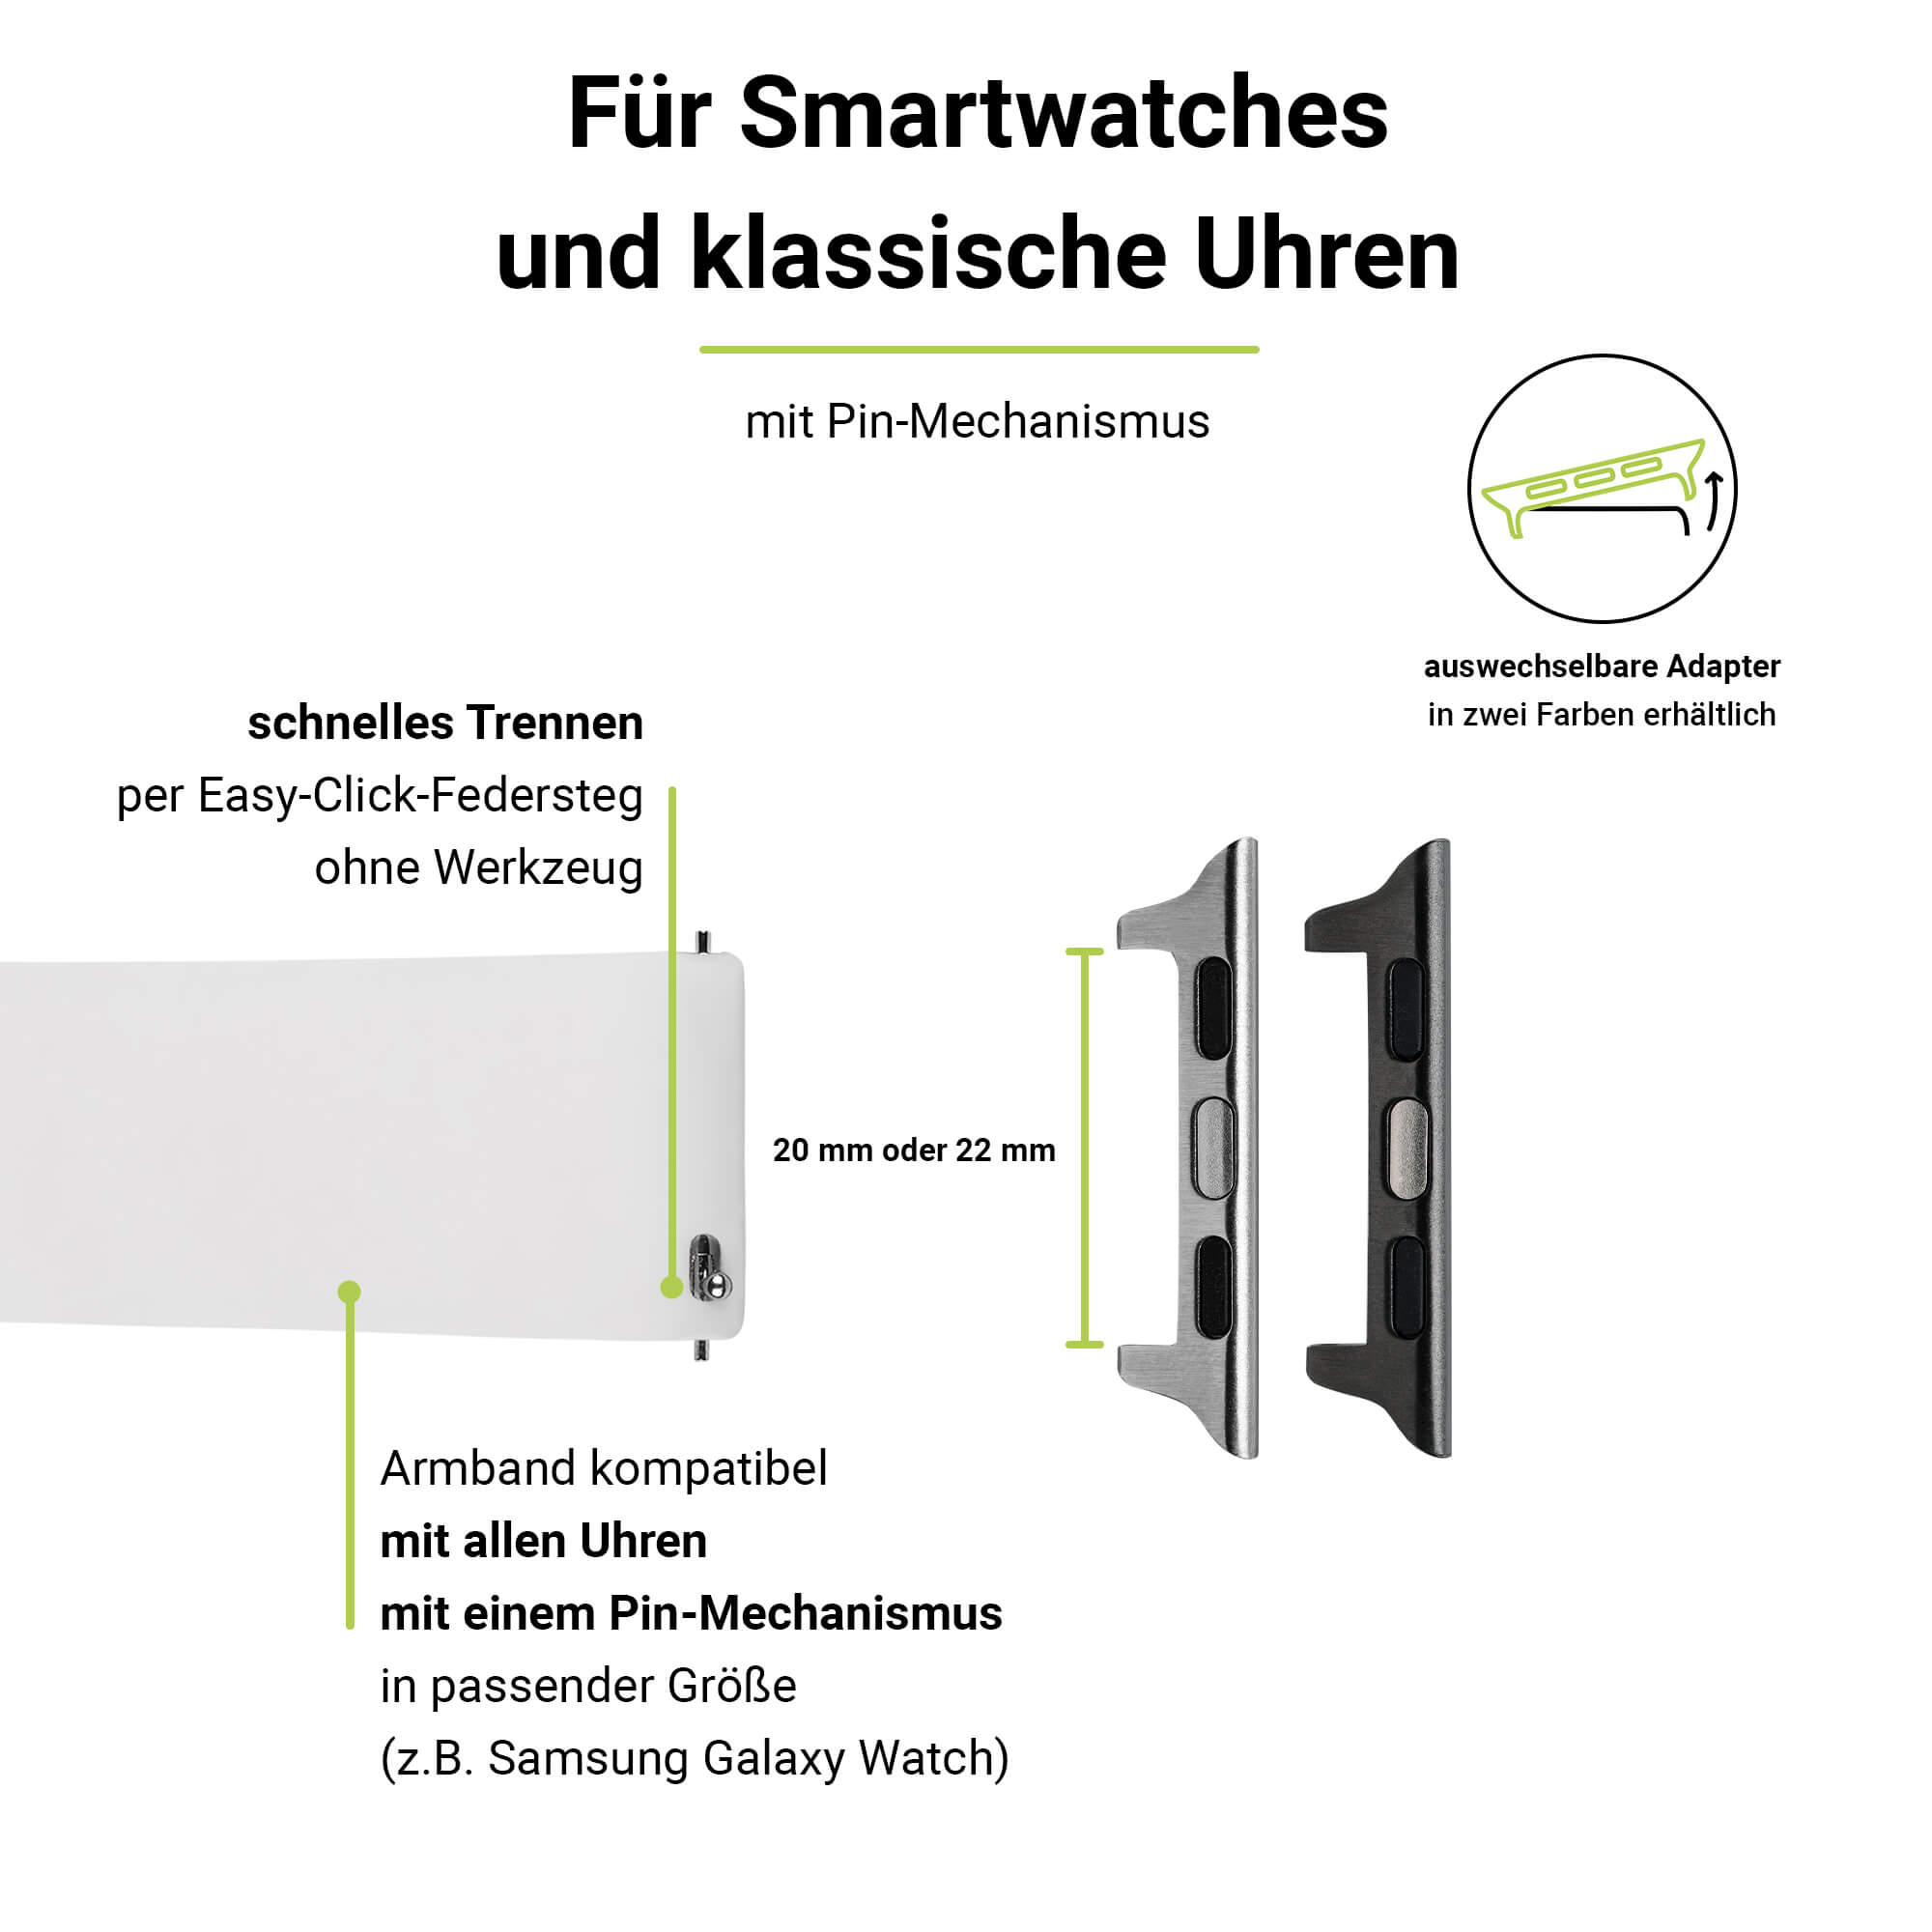 Weiß 6-4 ARTWIZZ (41mm), Apple, Apple Ersatzarmband, 9-7 SE & (40mm), 3-1 WatchBand Watch (38mm), Silicone,